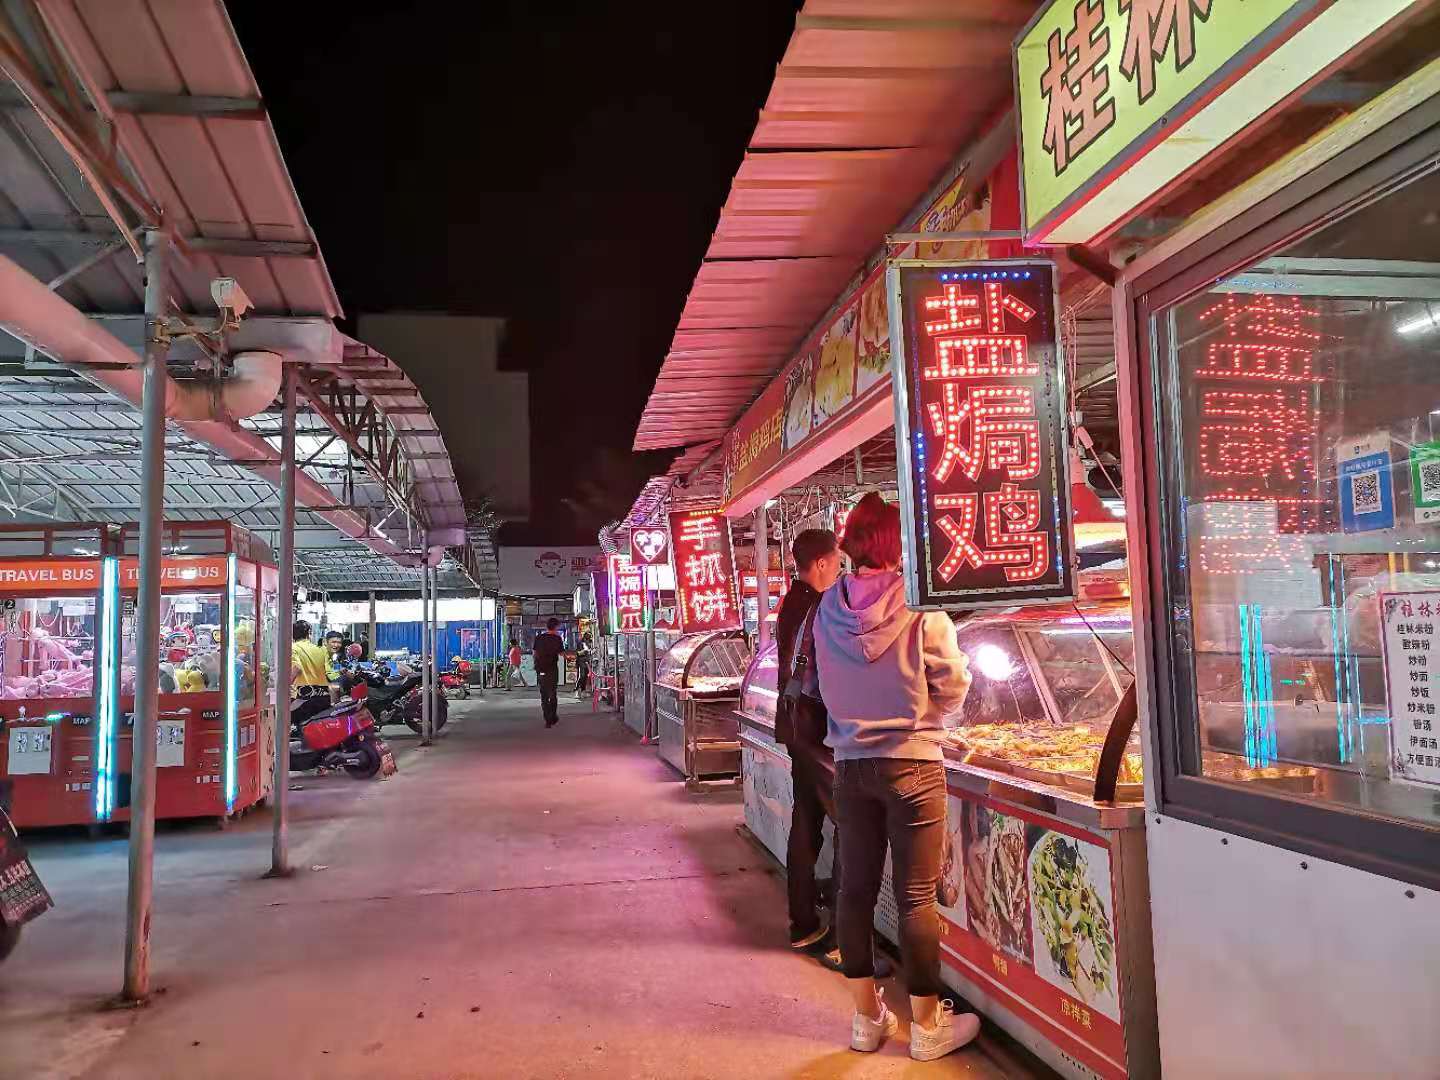 林旺夜市 三亚海棠区最有烟火气息的美食夜市,人均50吃到扶墙走